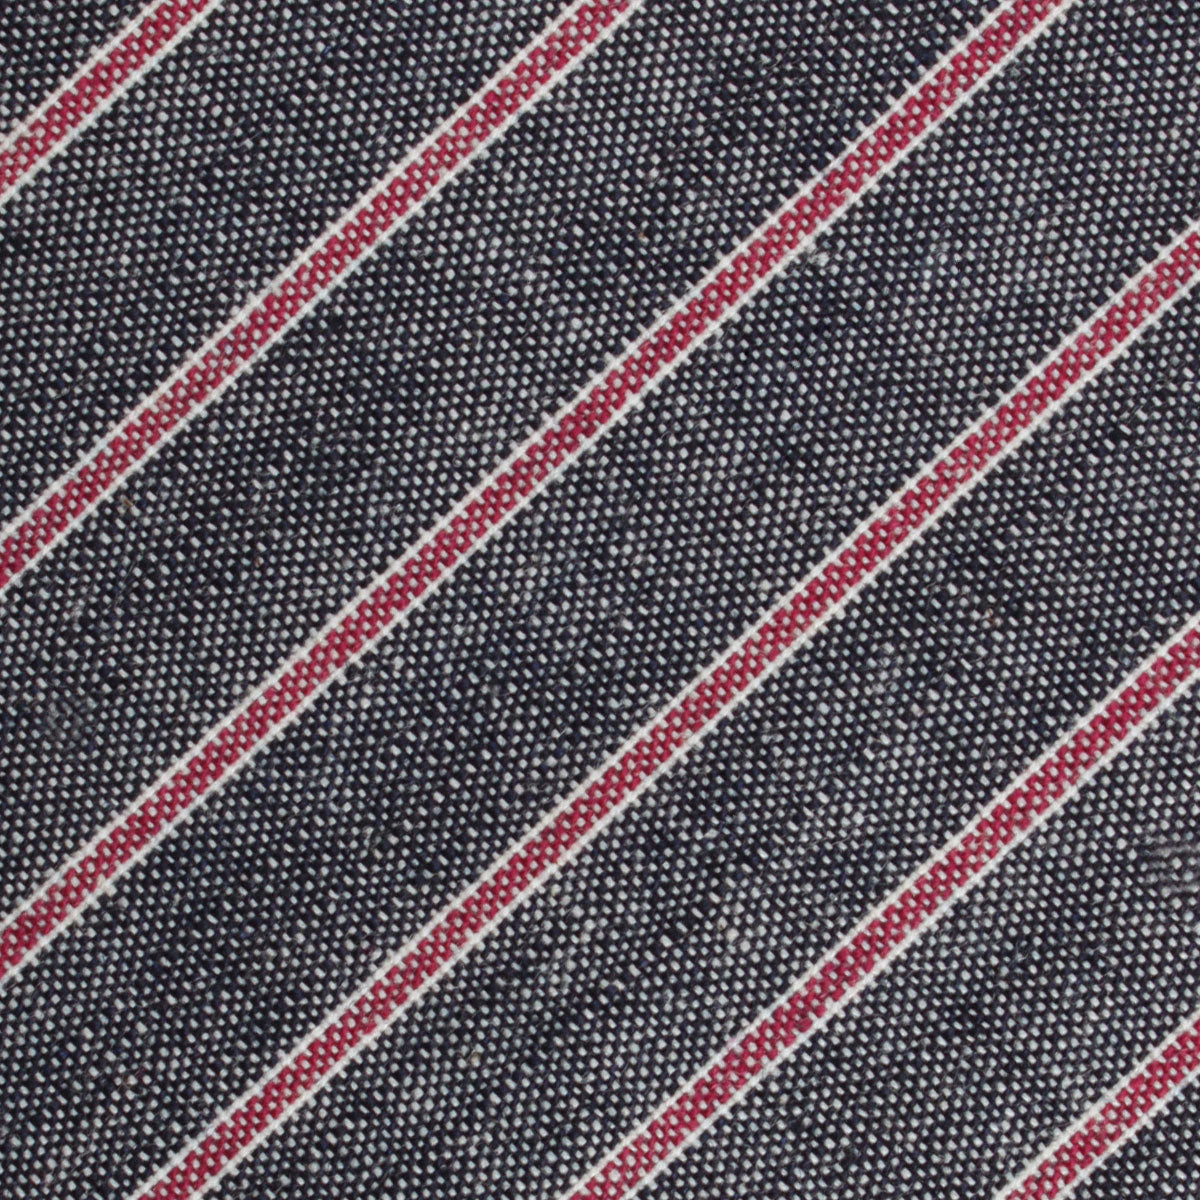 Cherry Red Pinstripe Fabric Necktie